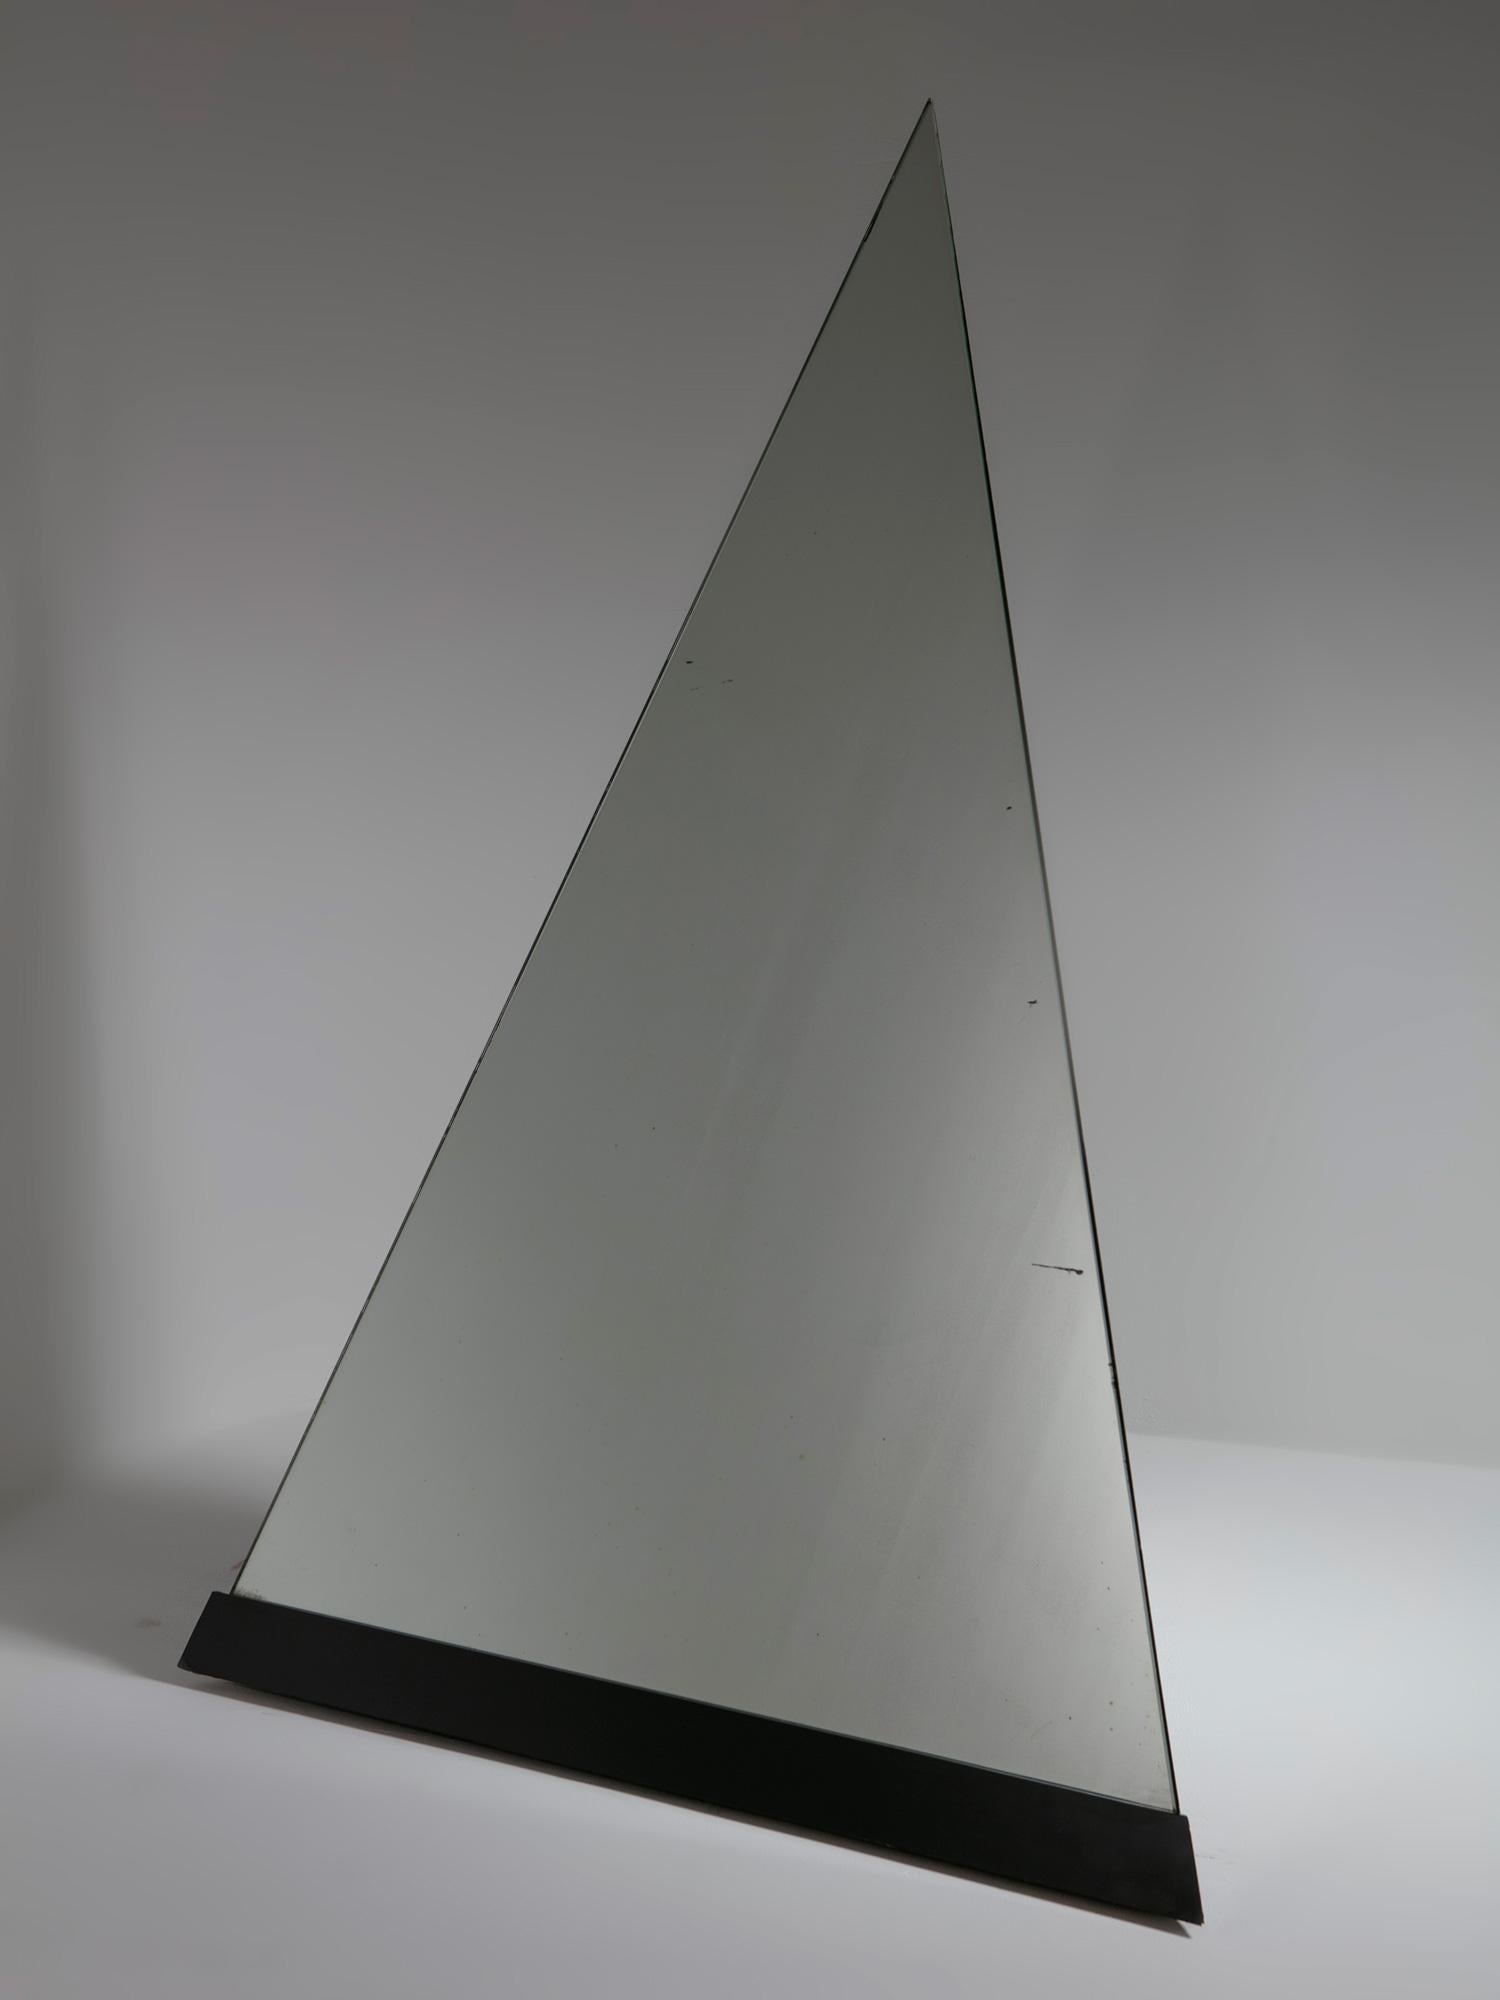 Seltener Bodenspiegel Cheope von Giuseppe Raimondi für Crystal Art.
Totemisches Element, bestehend aus zwei schwarzen Laminatseiten und einer schrägen verspiegelten Glasfläche.
Dieses Stück kann auf seinen drehbaren Rädern frei bewegt werden.